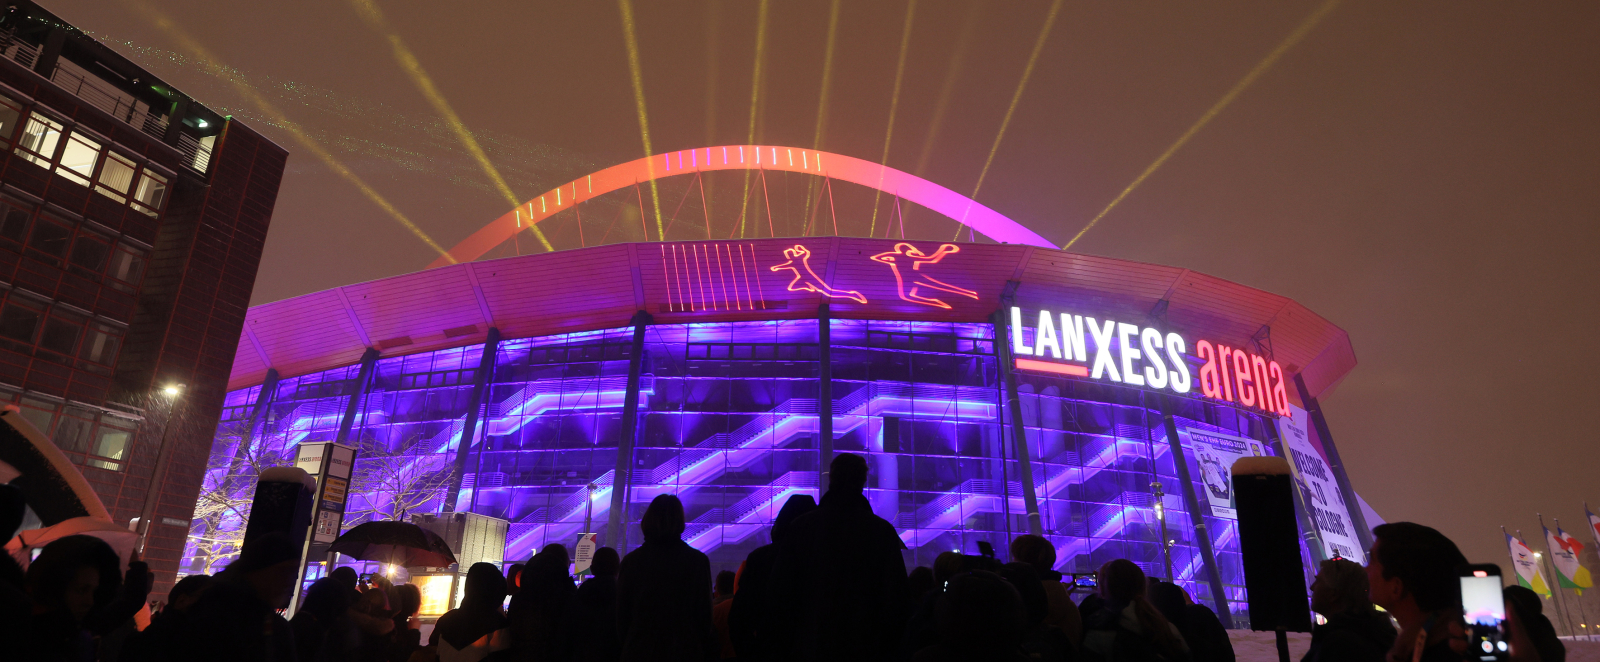 Außenansicht der Lanxess arena mit Lasershow